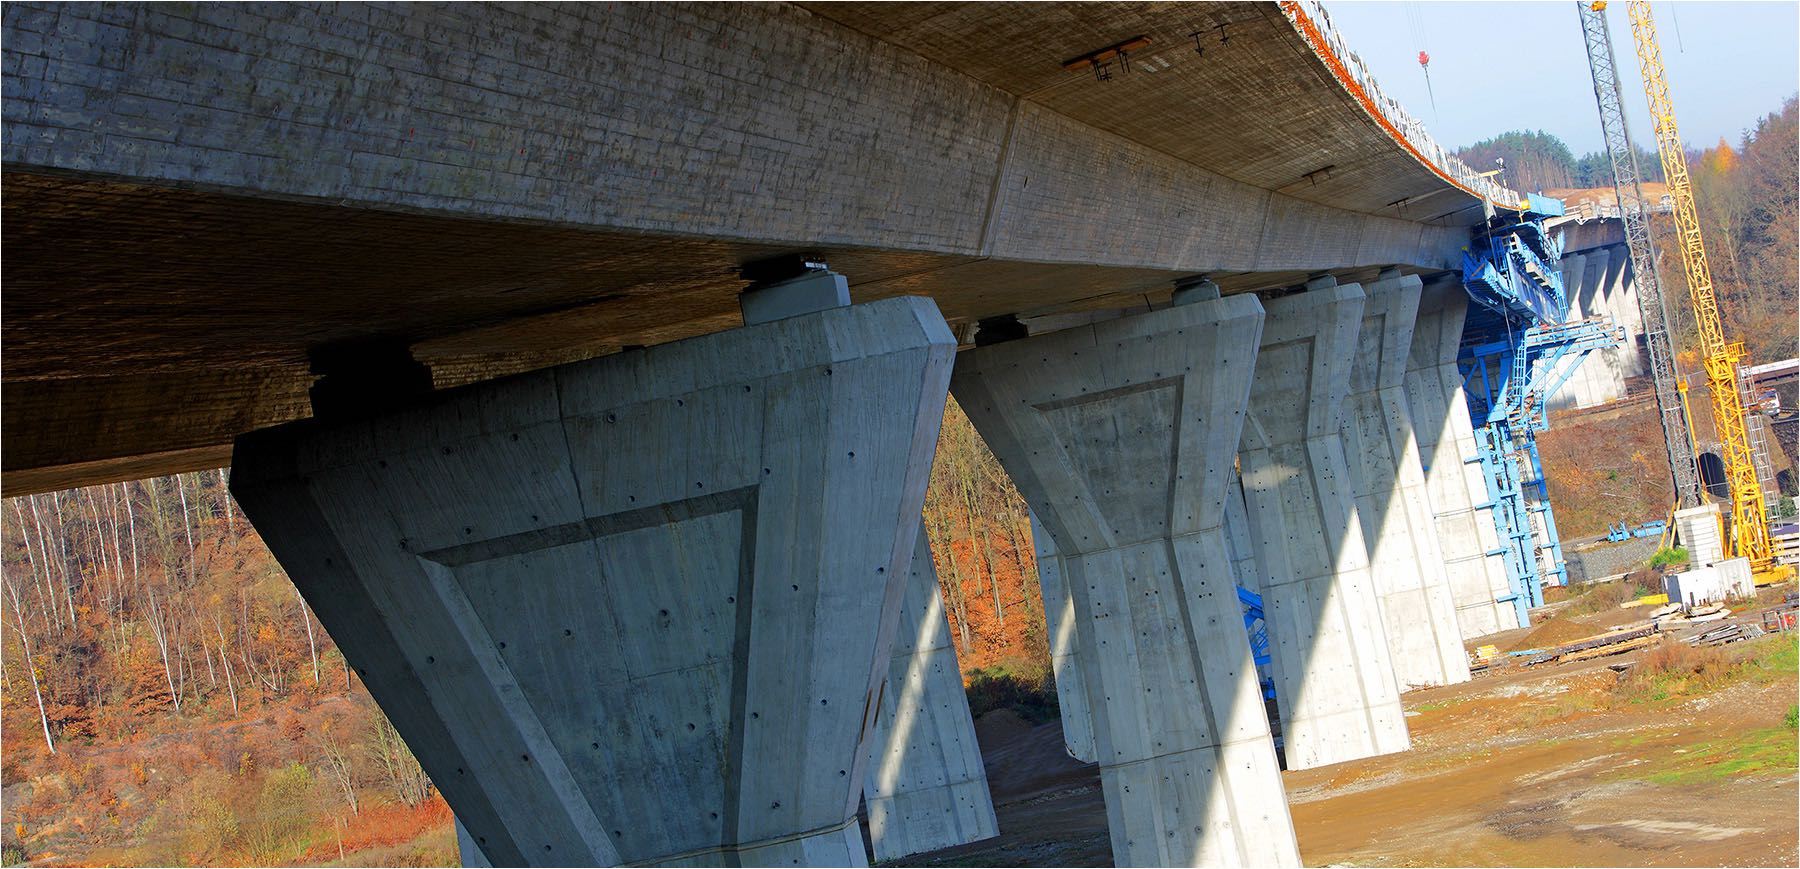  Architekturfotografie. Autobahnviadukt über die Mulde bei Penig für Heidelberger Zement. Fotografiert durch Jörg Riethausen.  